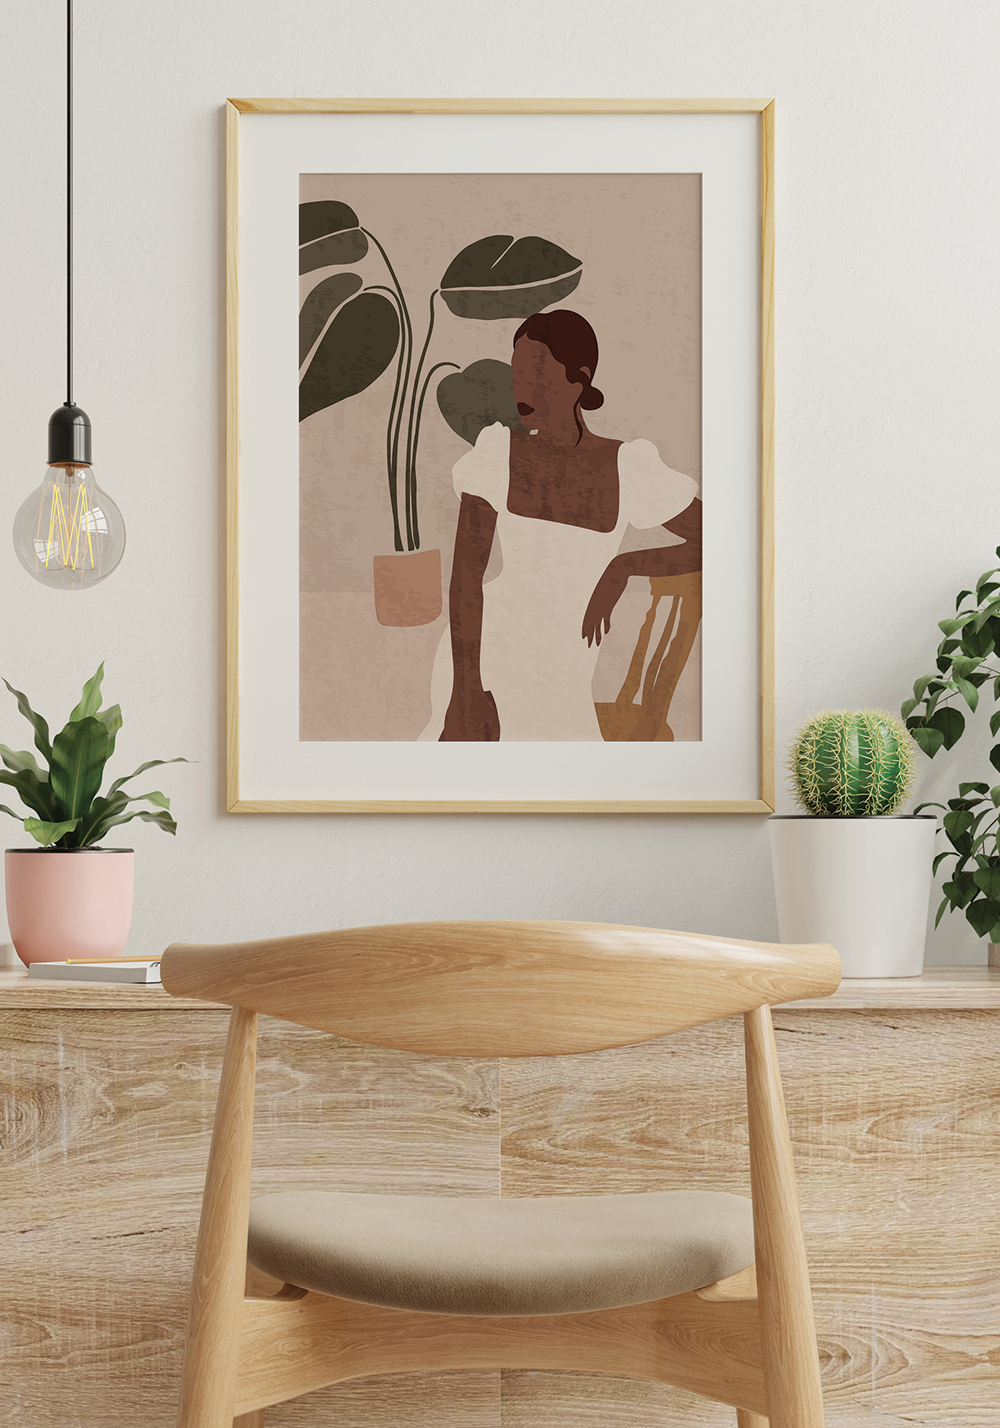 Femme style boho minimaliste robe d'été affiche murale bureau artcamia